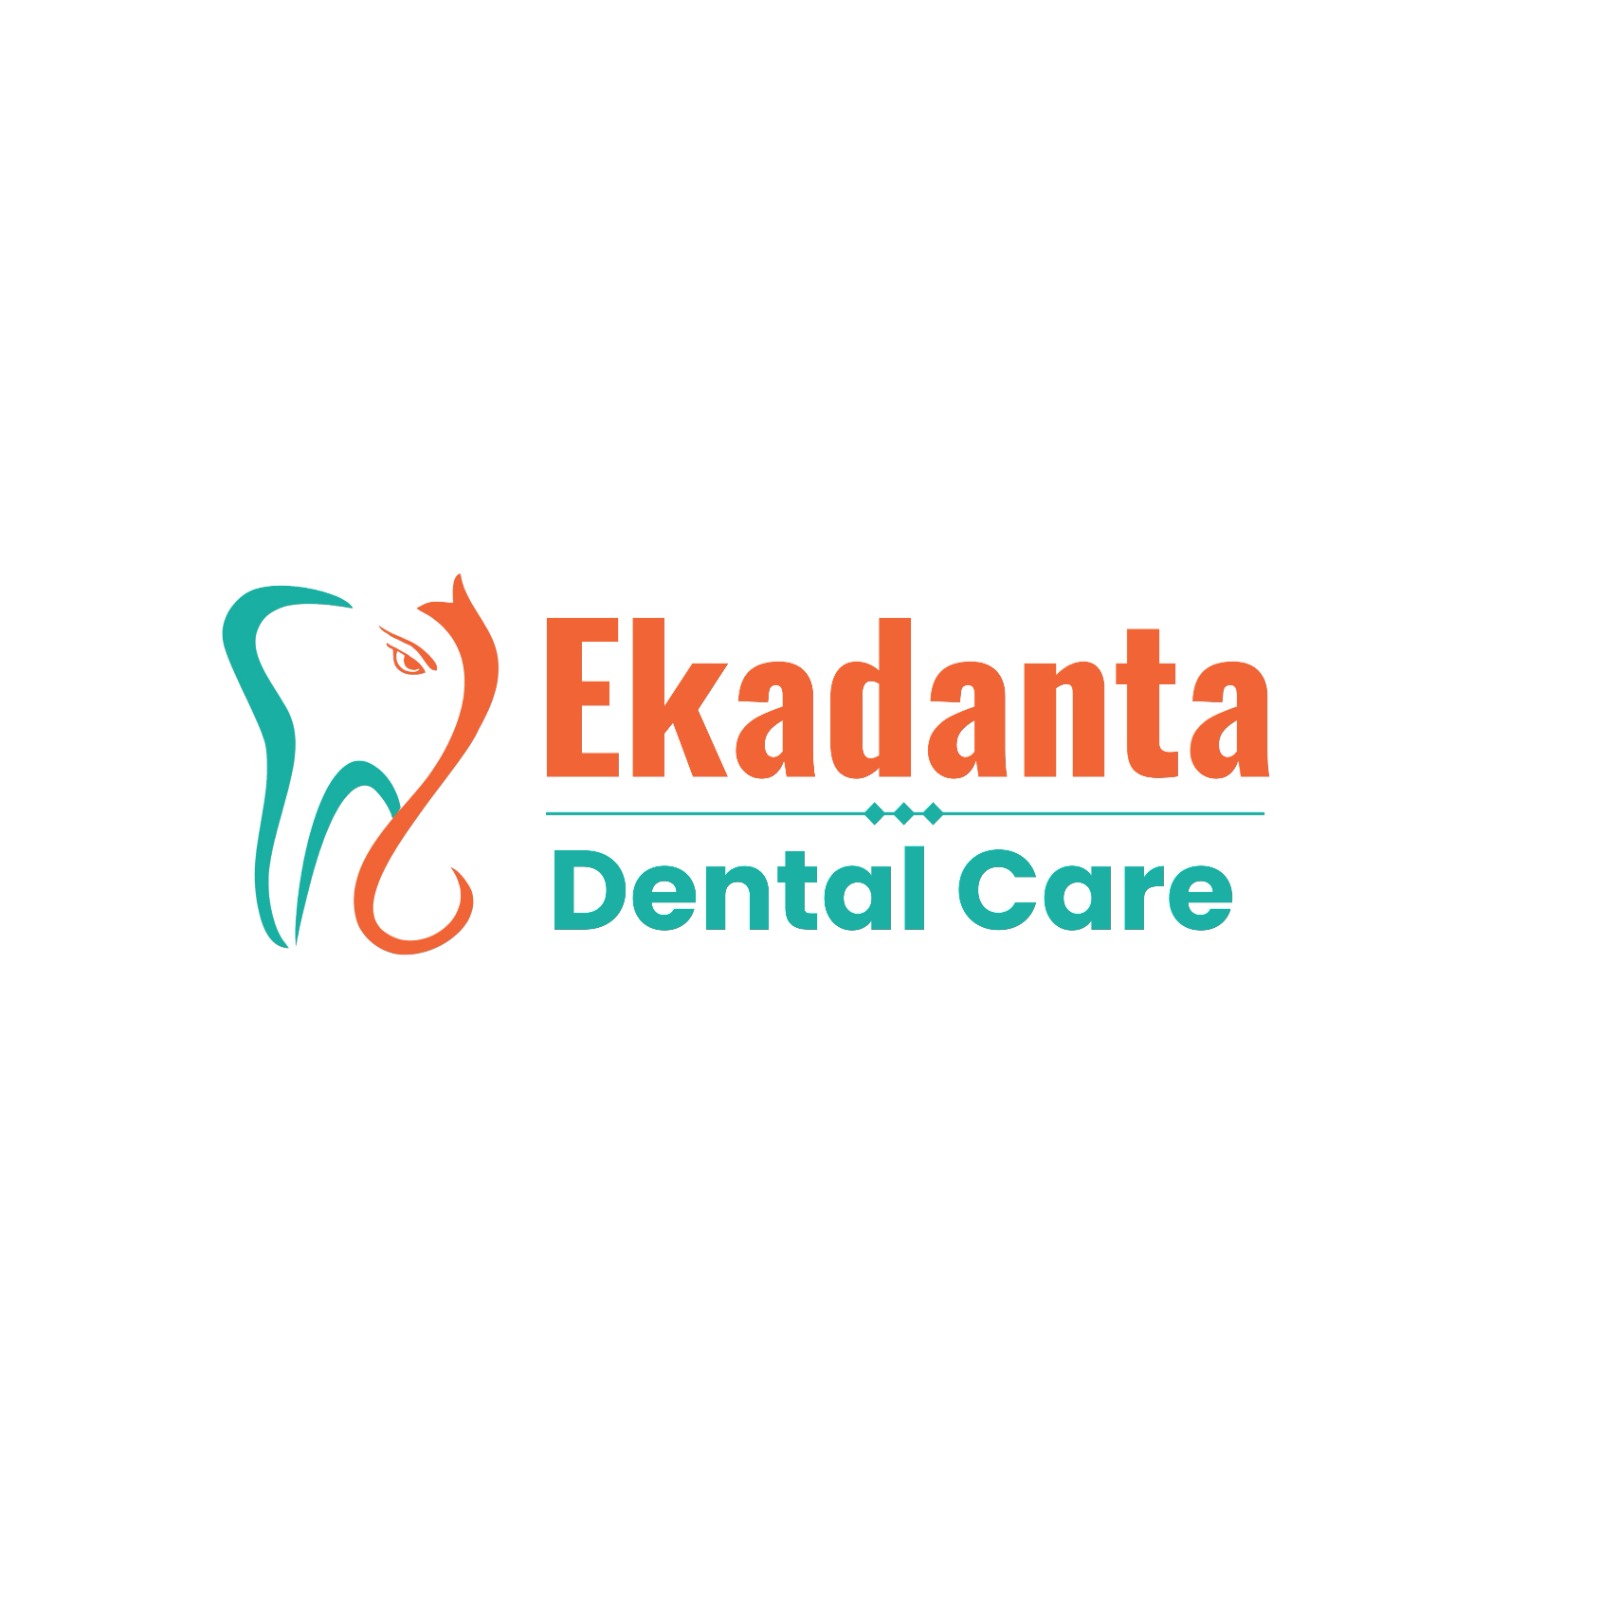 Ekadanta Dental Care